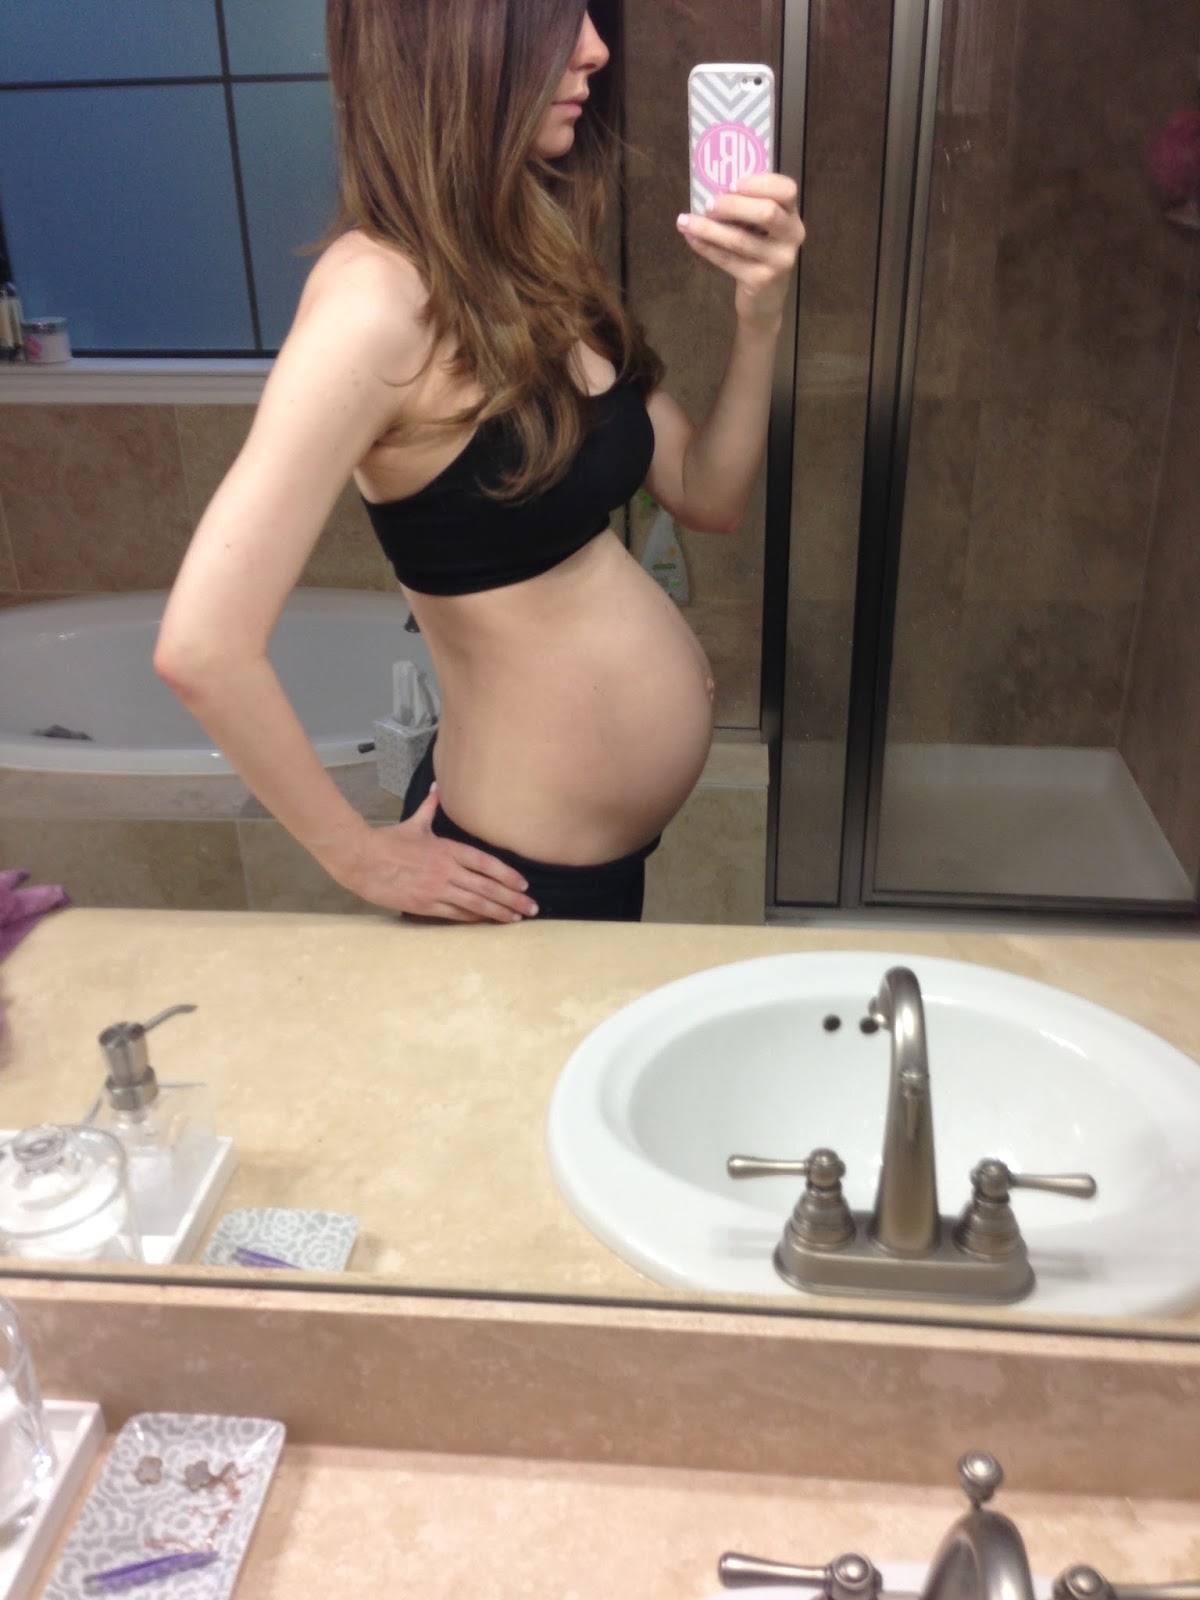 baby bump at 29 weeks